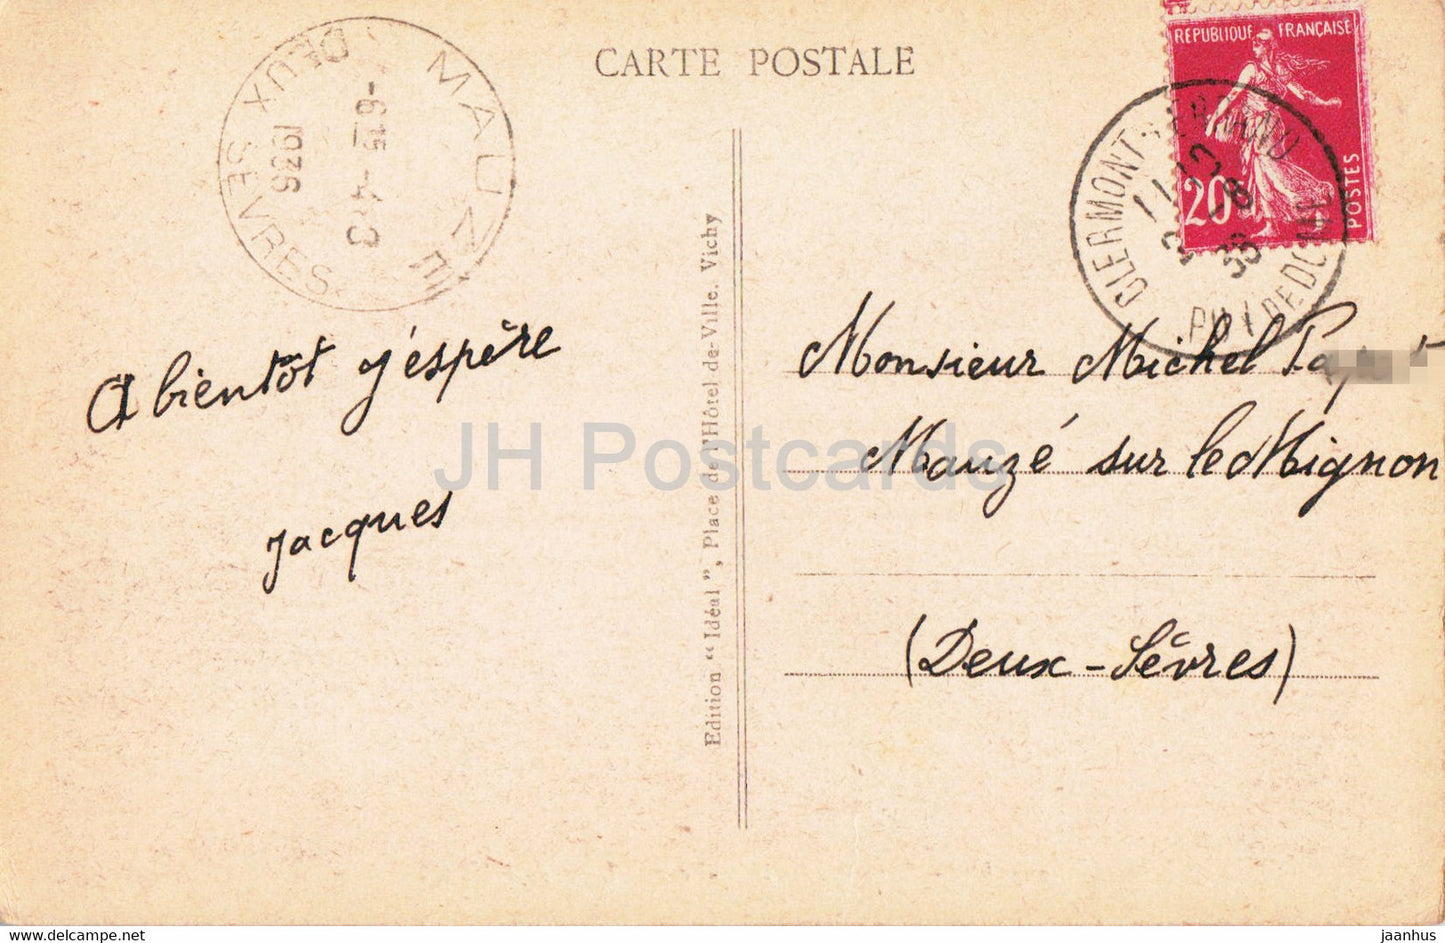 Environs du Mont Dore - Lac de Guery - 3131 - carte postale ancienne - 1936 - France - occasion